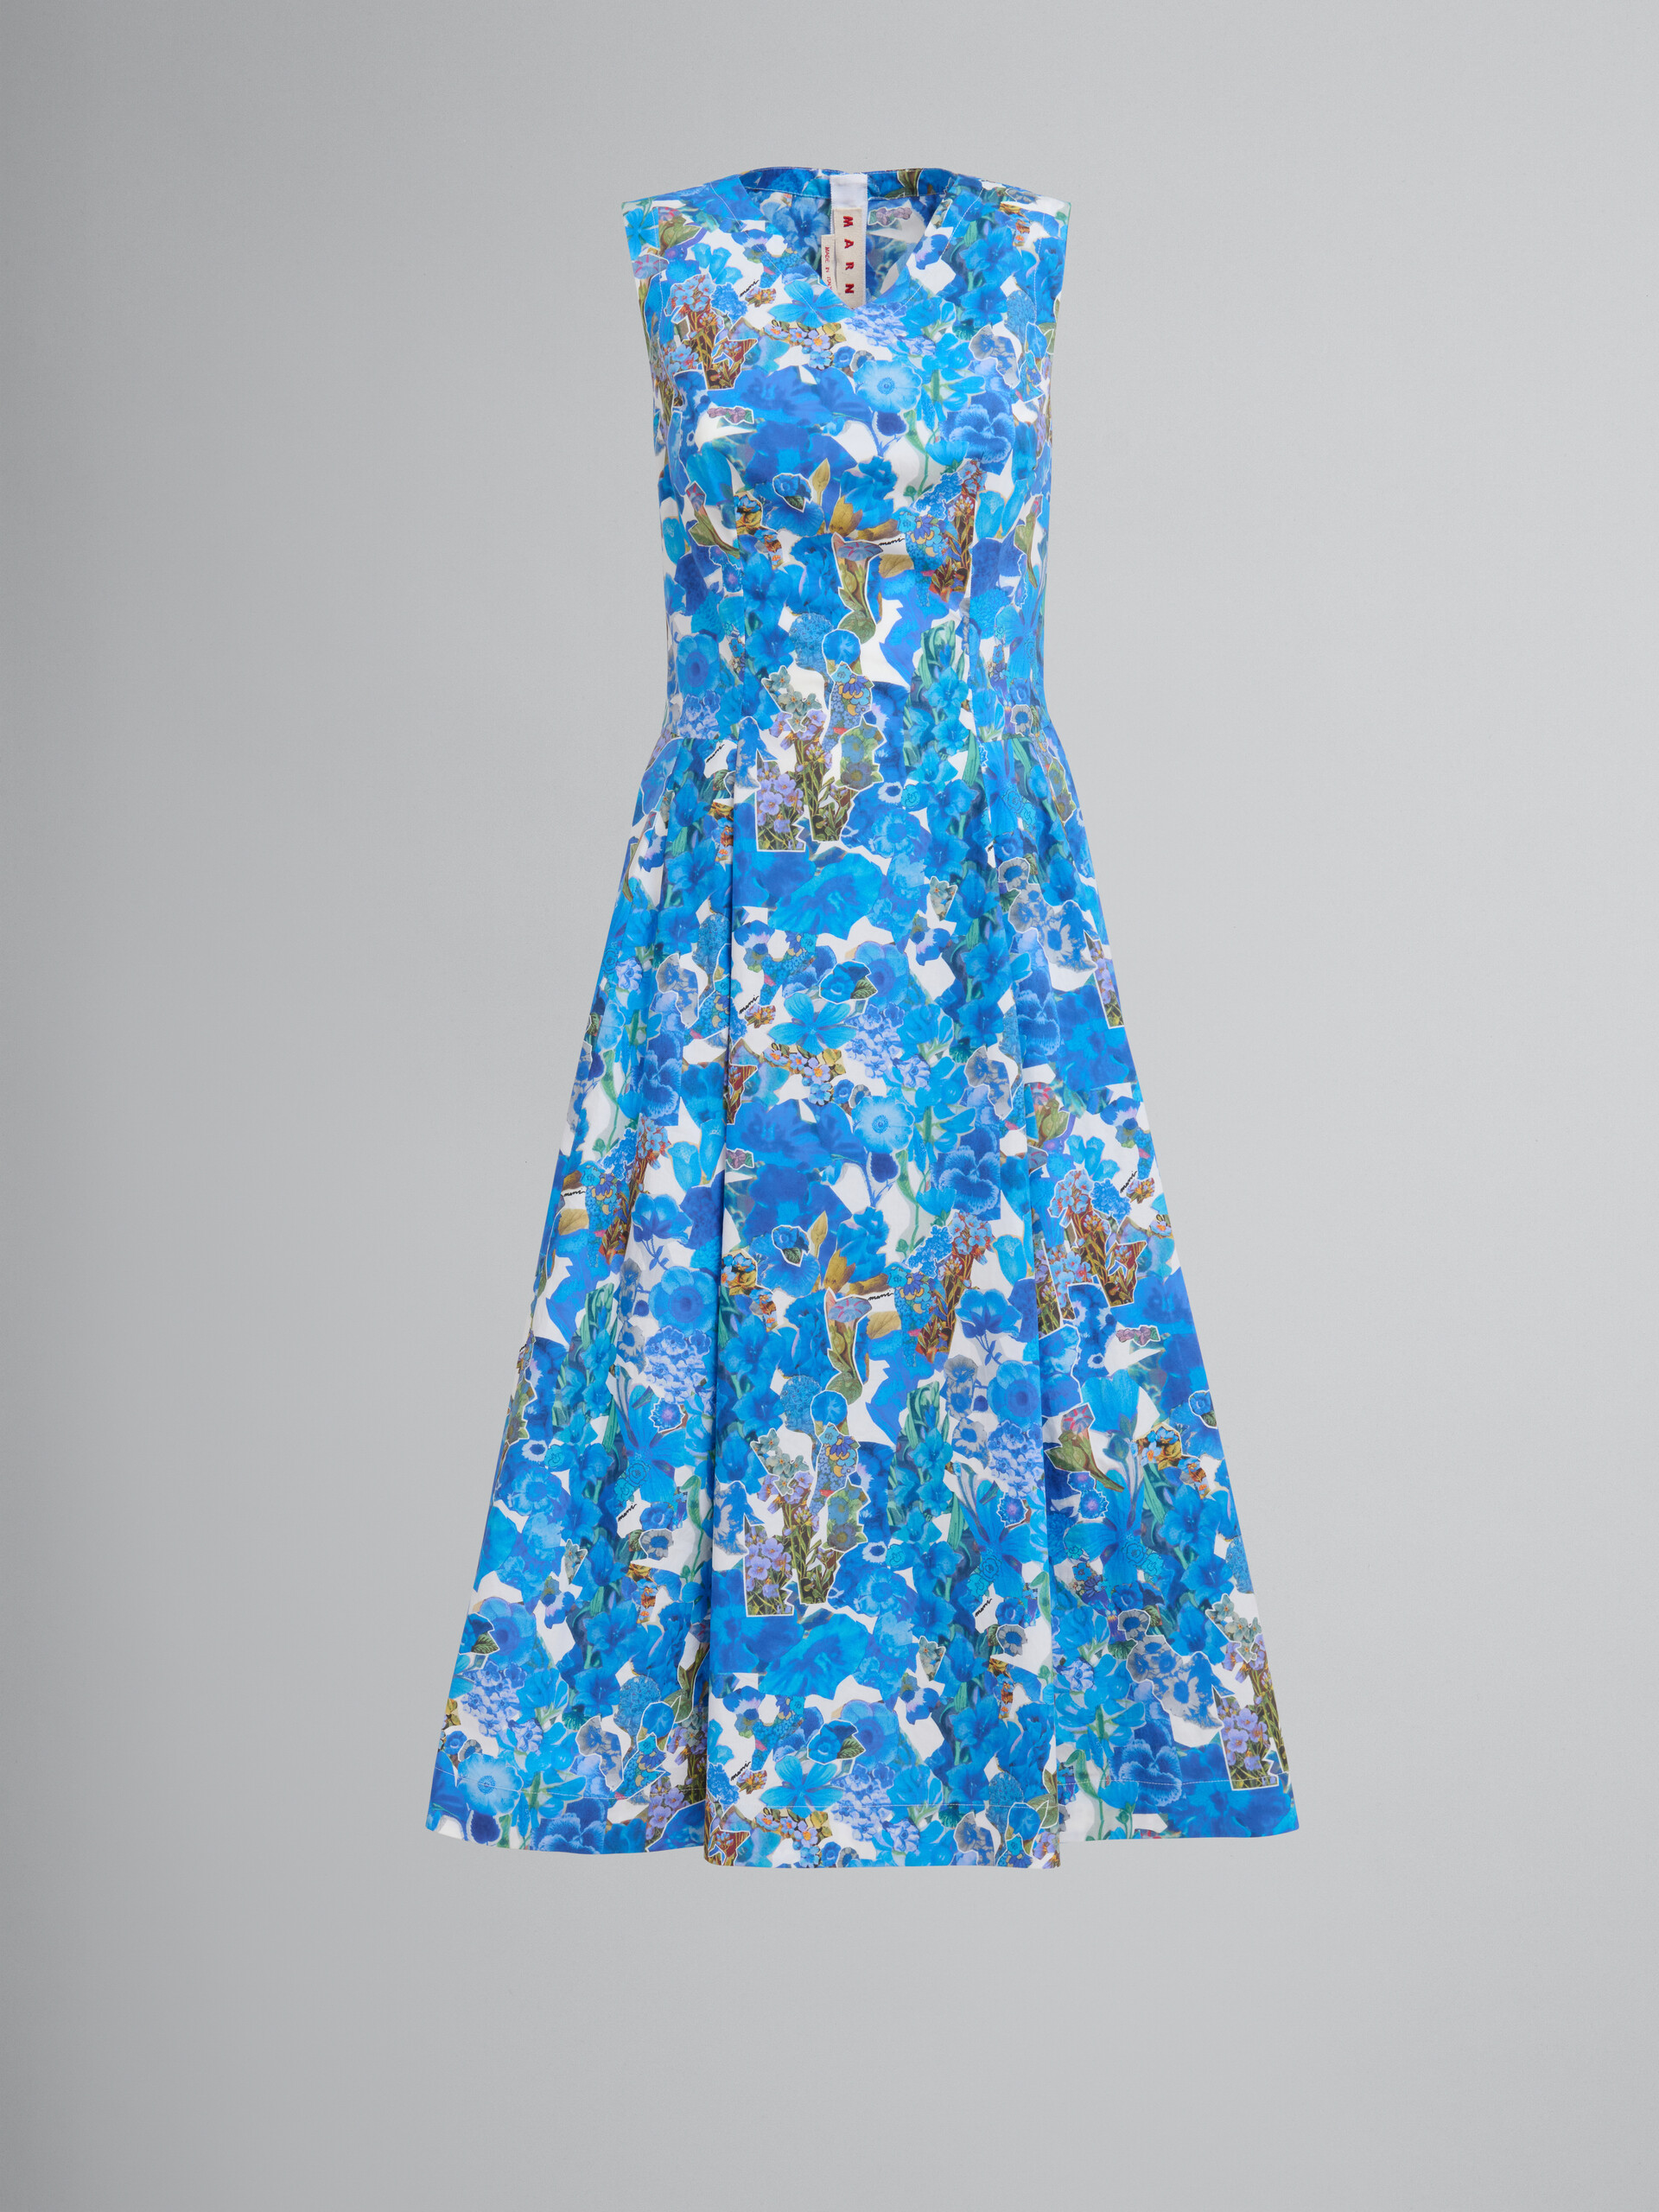 Blaues A-Linien-Kleid aus Baumwolle mit Collage-Print - Kleider - Image 1